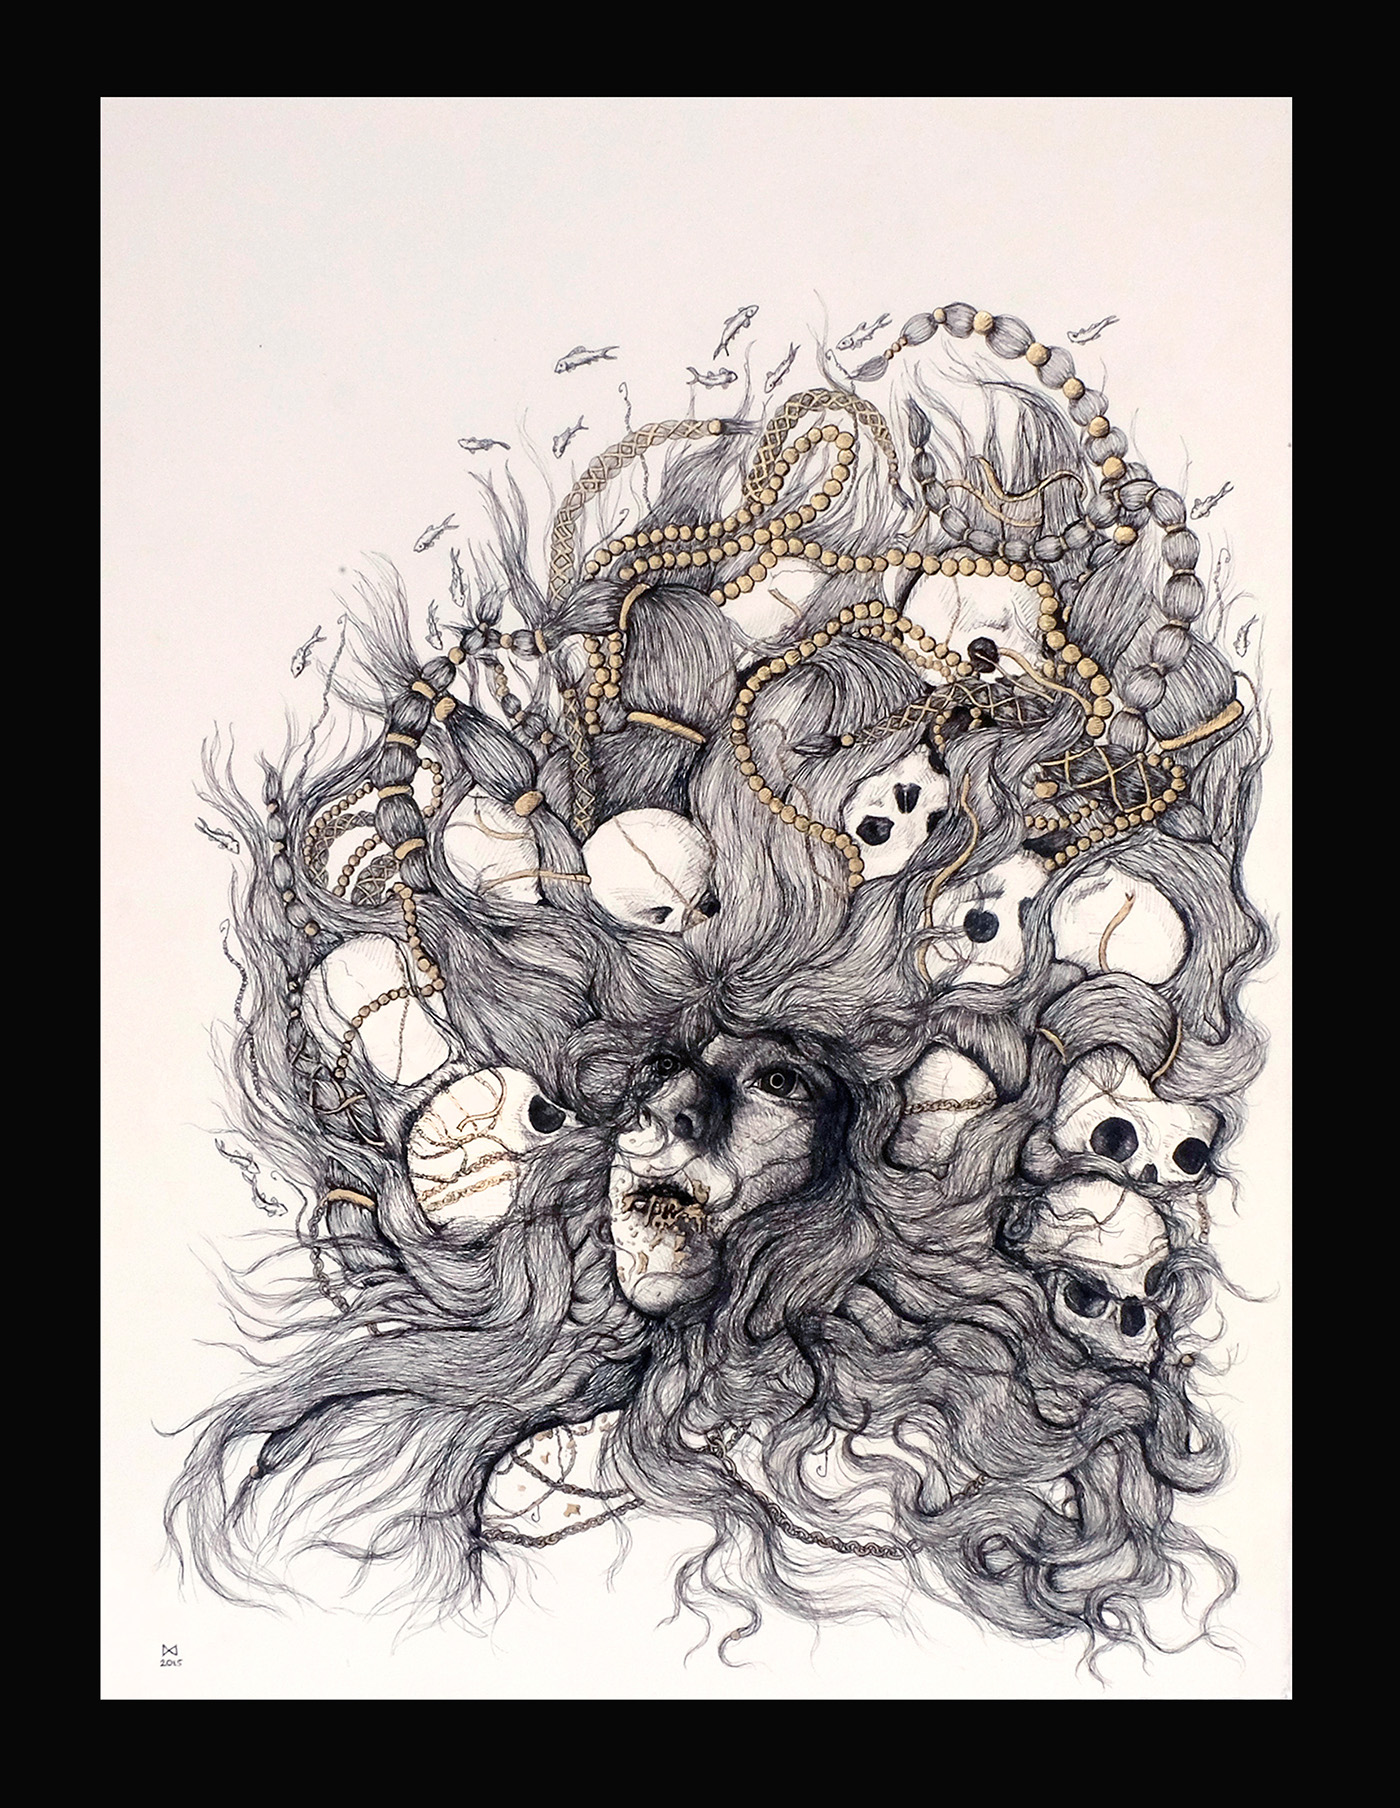 witch myth legand female ink death skulls dark Ocean mermaid creepy draw design tattoo portrait